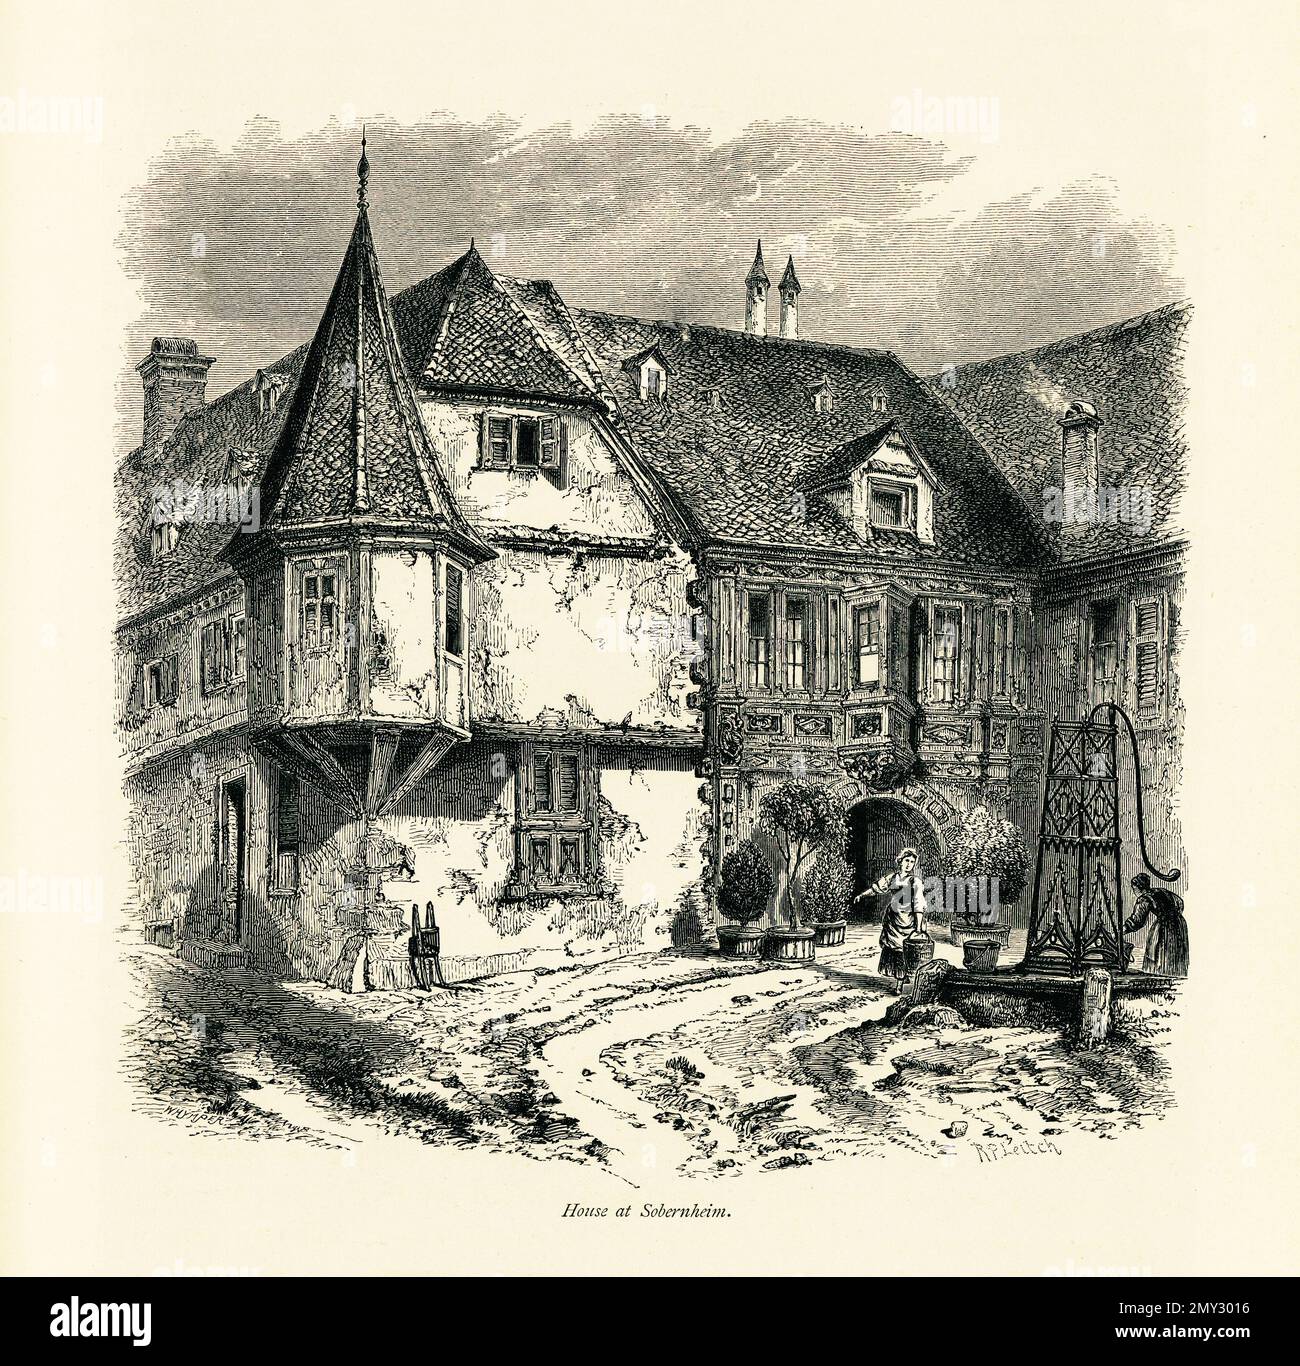 Gravure antique d'une maison à Bad Sobernheim, un village situé sur la rivière Nahe, en Allemagne. Illustration publiée dans la pittoresque Europe, vol III Banque D'Images